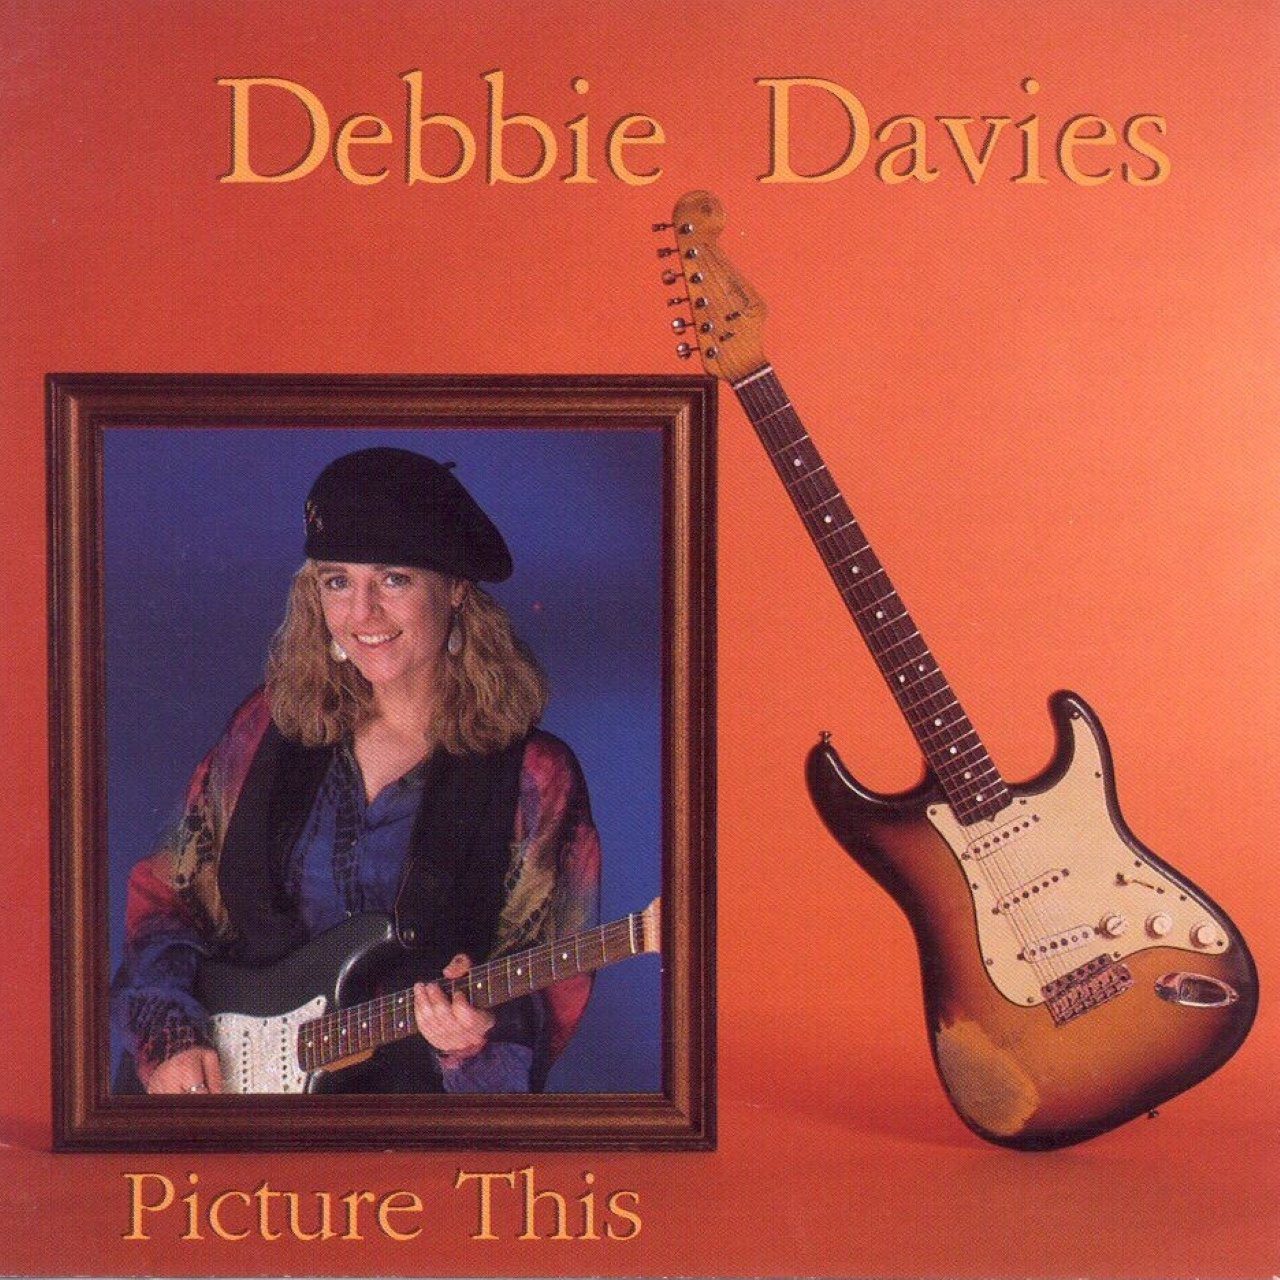 Debbie Davis – Picture This cover album